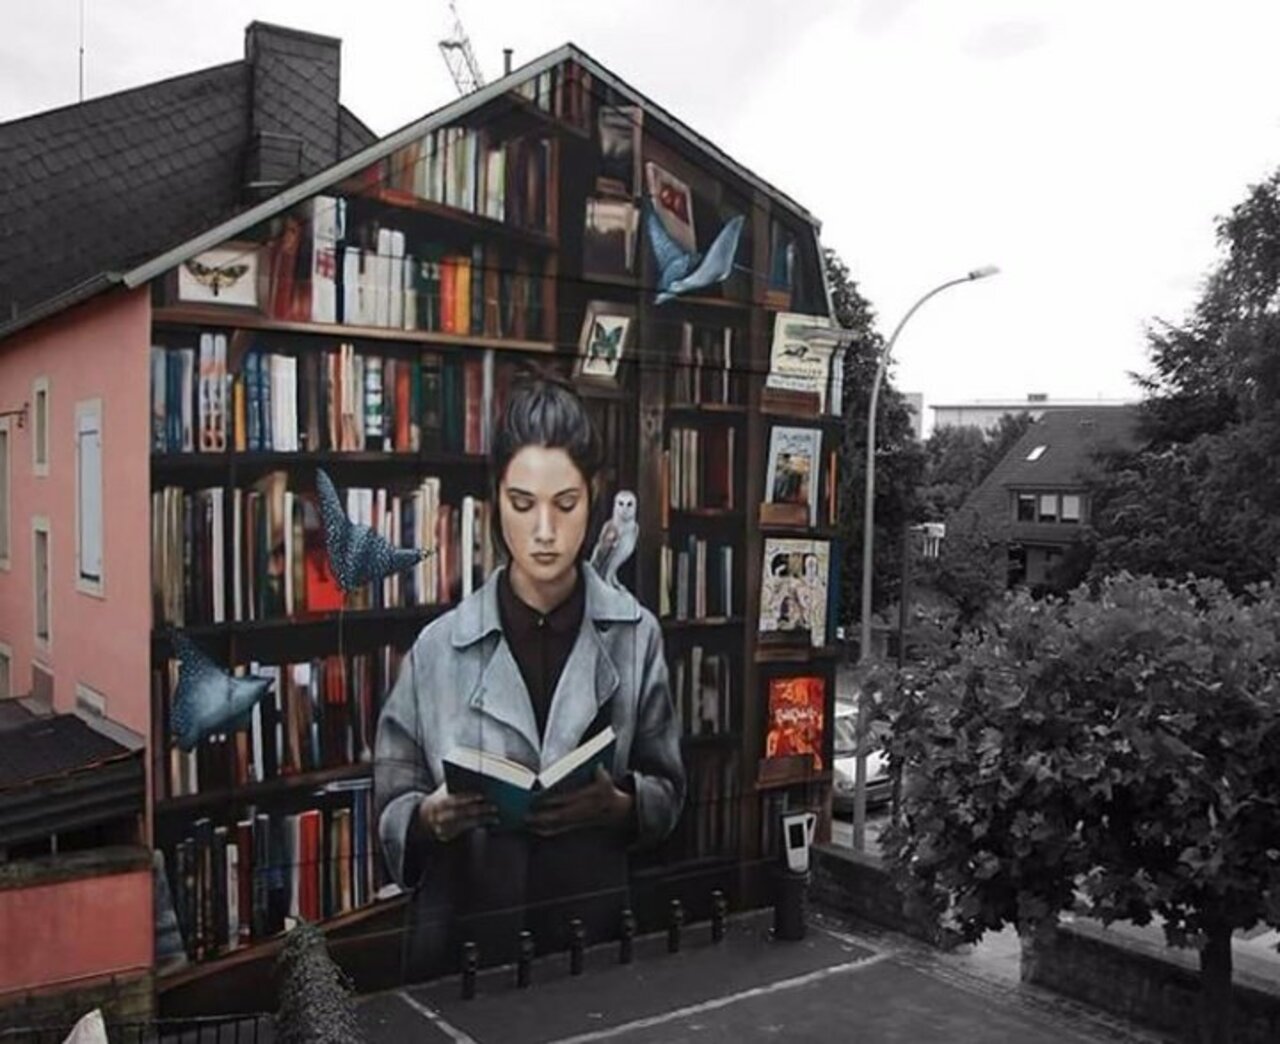 Street knowledge... #streetart #graffiti #muralart https://t.co/zwVtJrMfCF